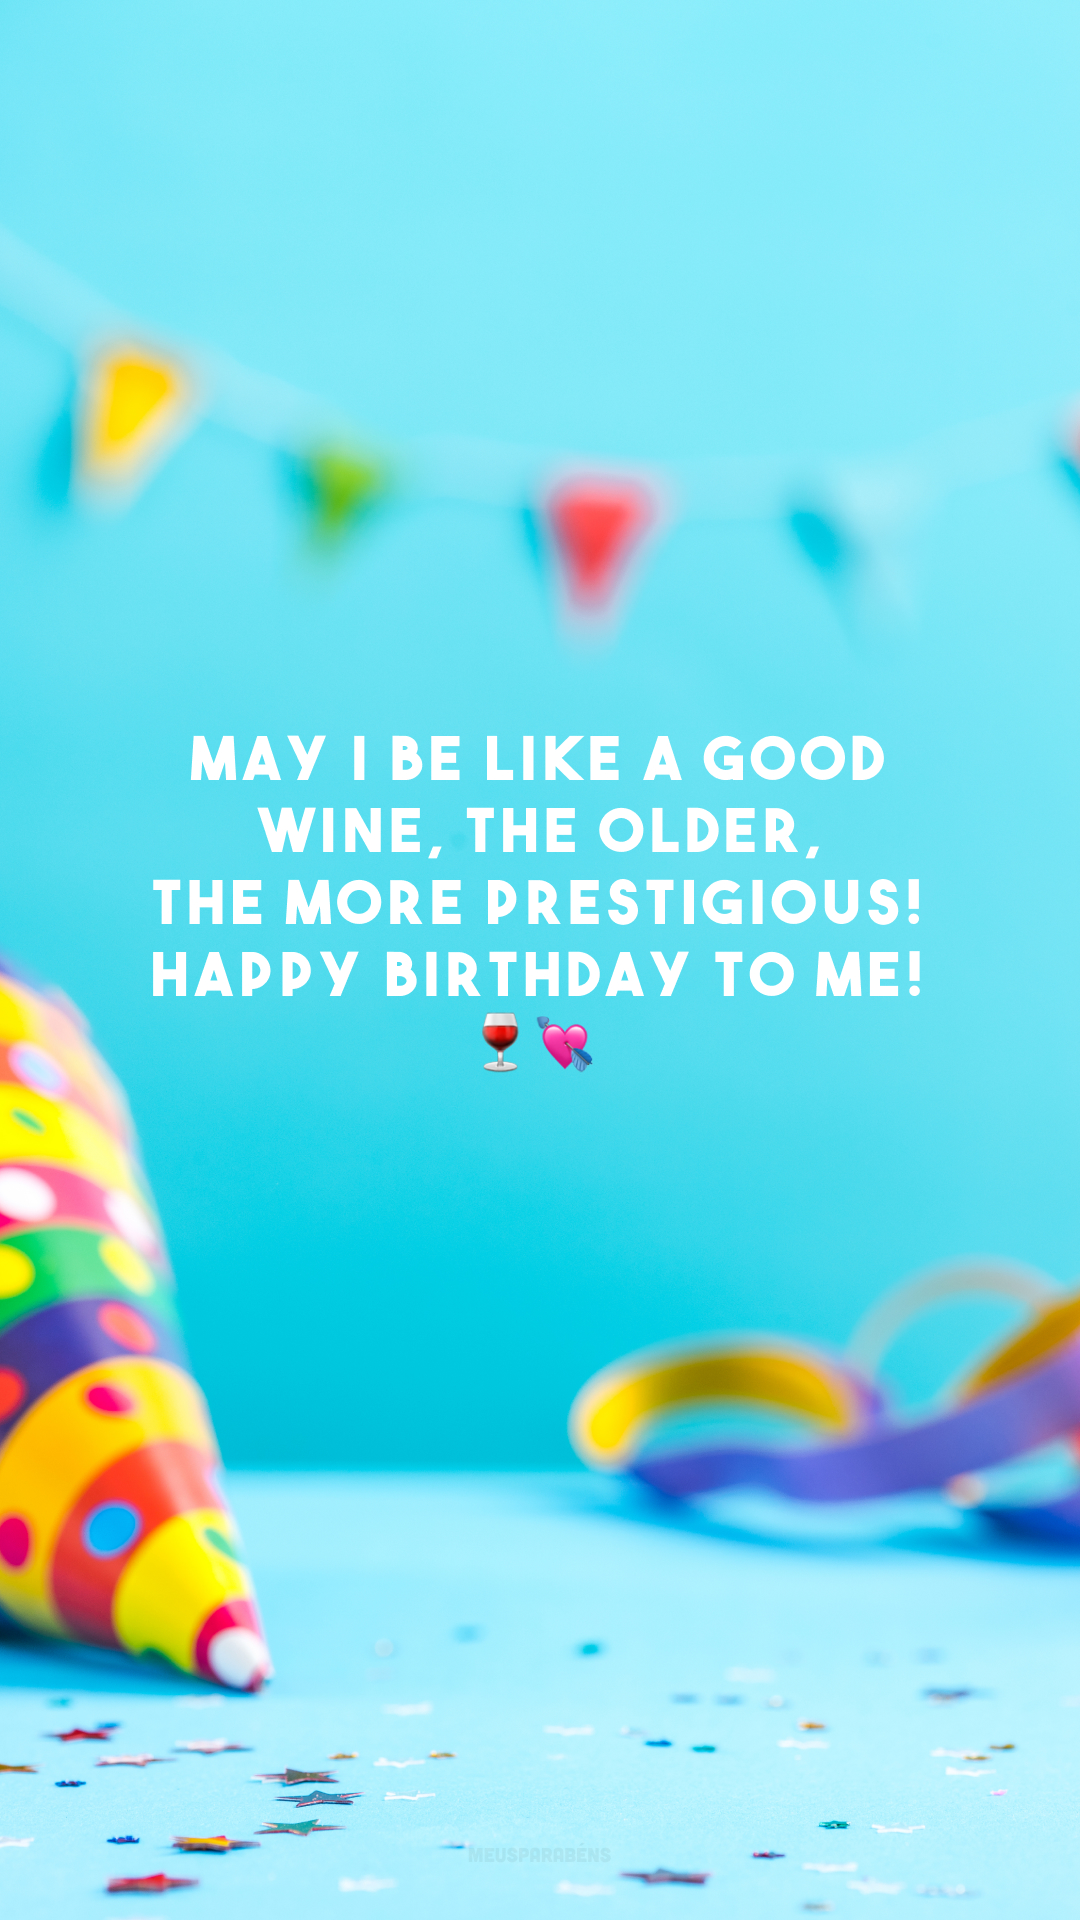 May I be like a good wine, the older, the more prestigious! Happy birthday to me! 🍷💘

<p>(Que eu seja como um bom vinho, quanto mais velho, mais prestigiado! Feliz aniversário pra mim!)<p>